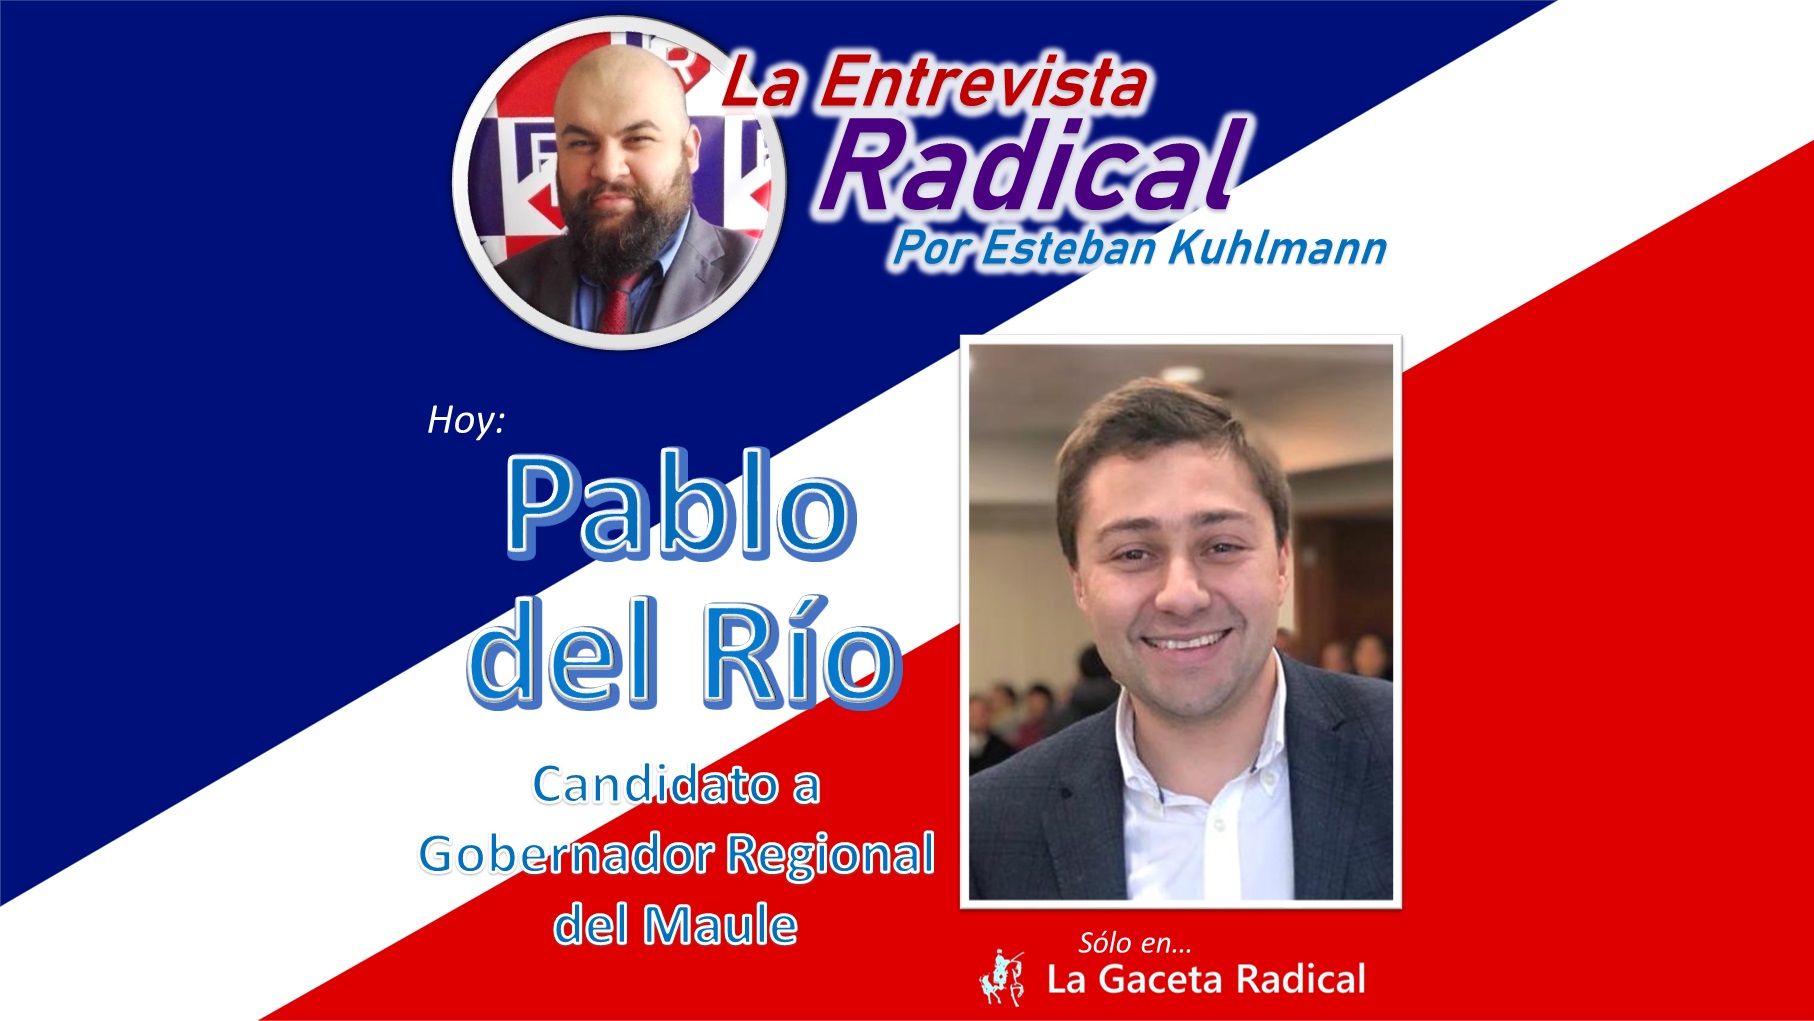 Entrevista a Pablo del Río, Candidato a Gobernador Regional por el Maule